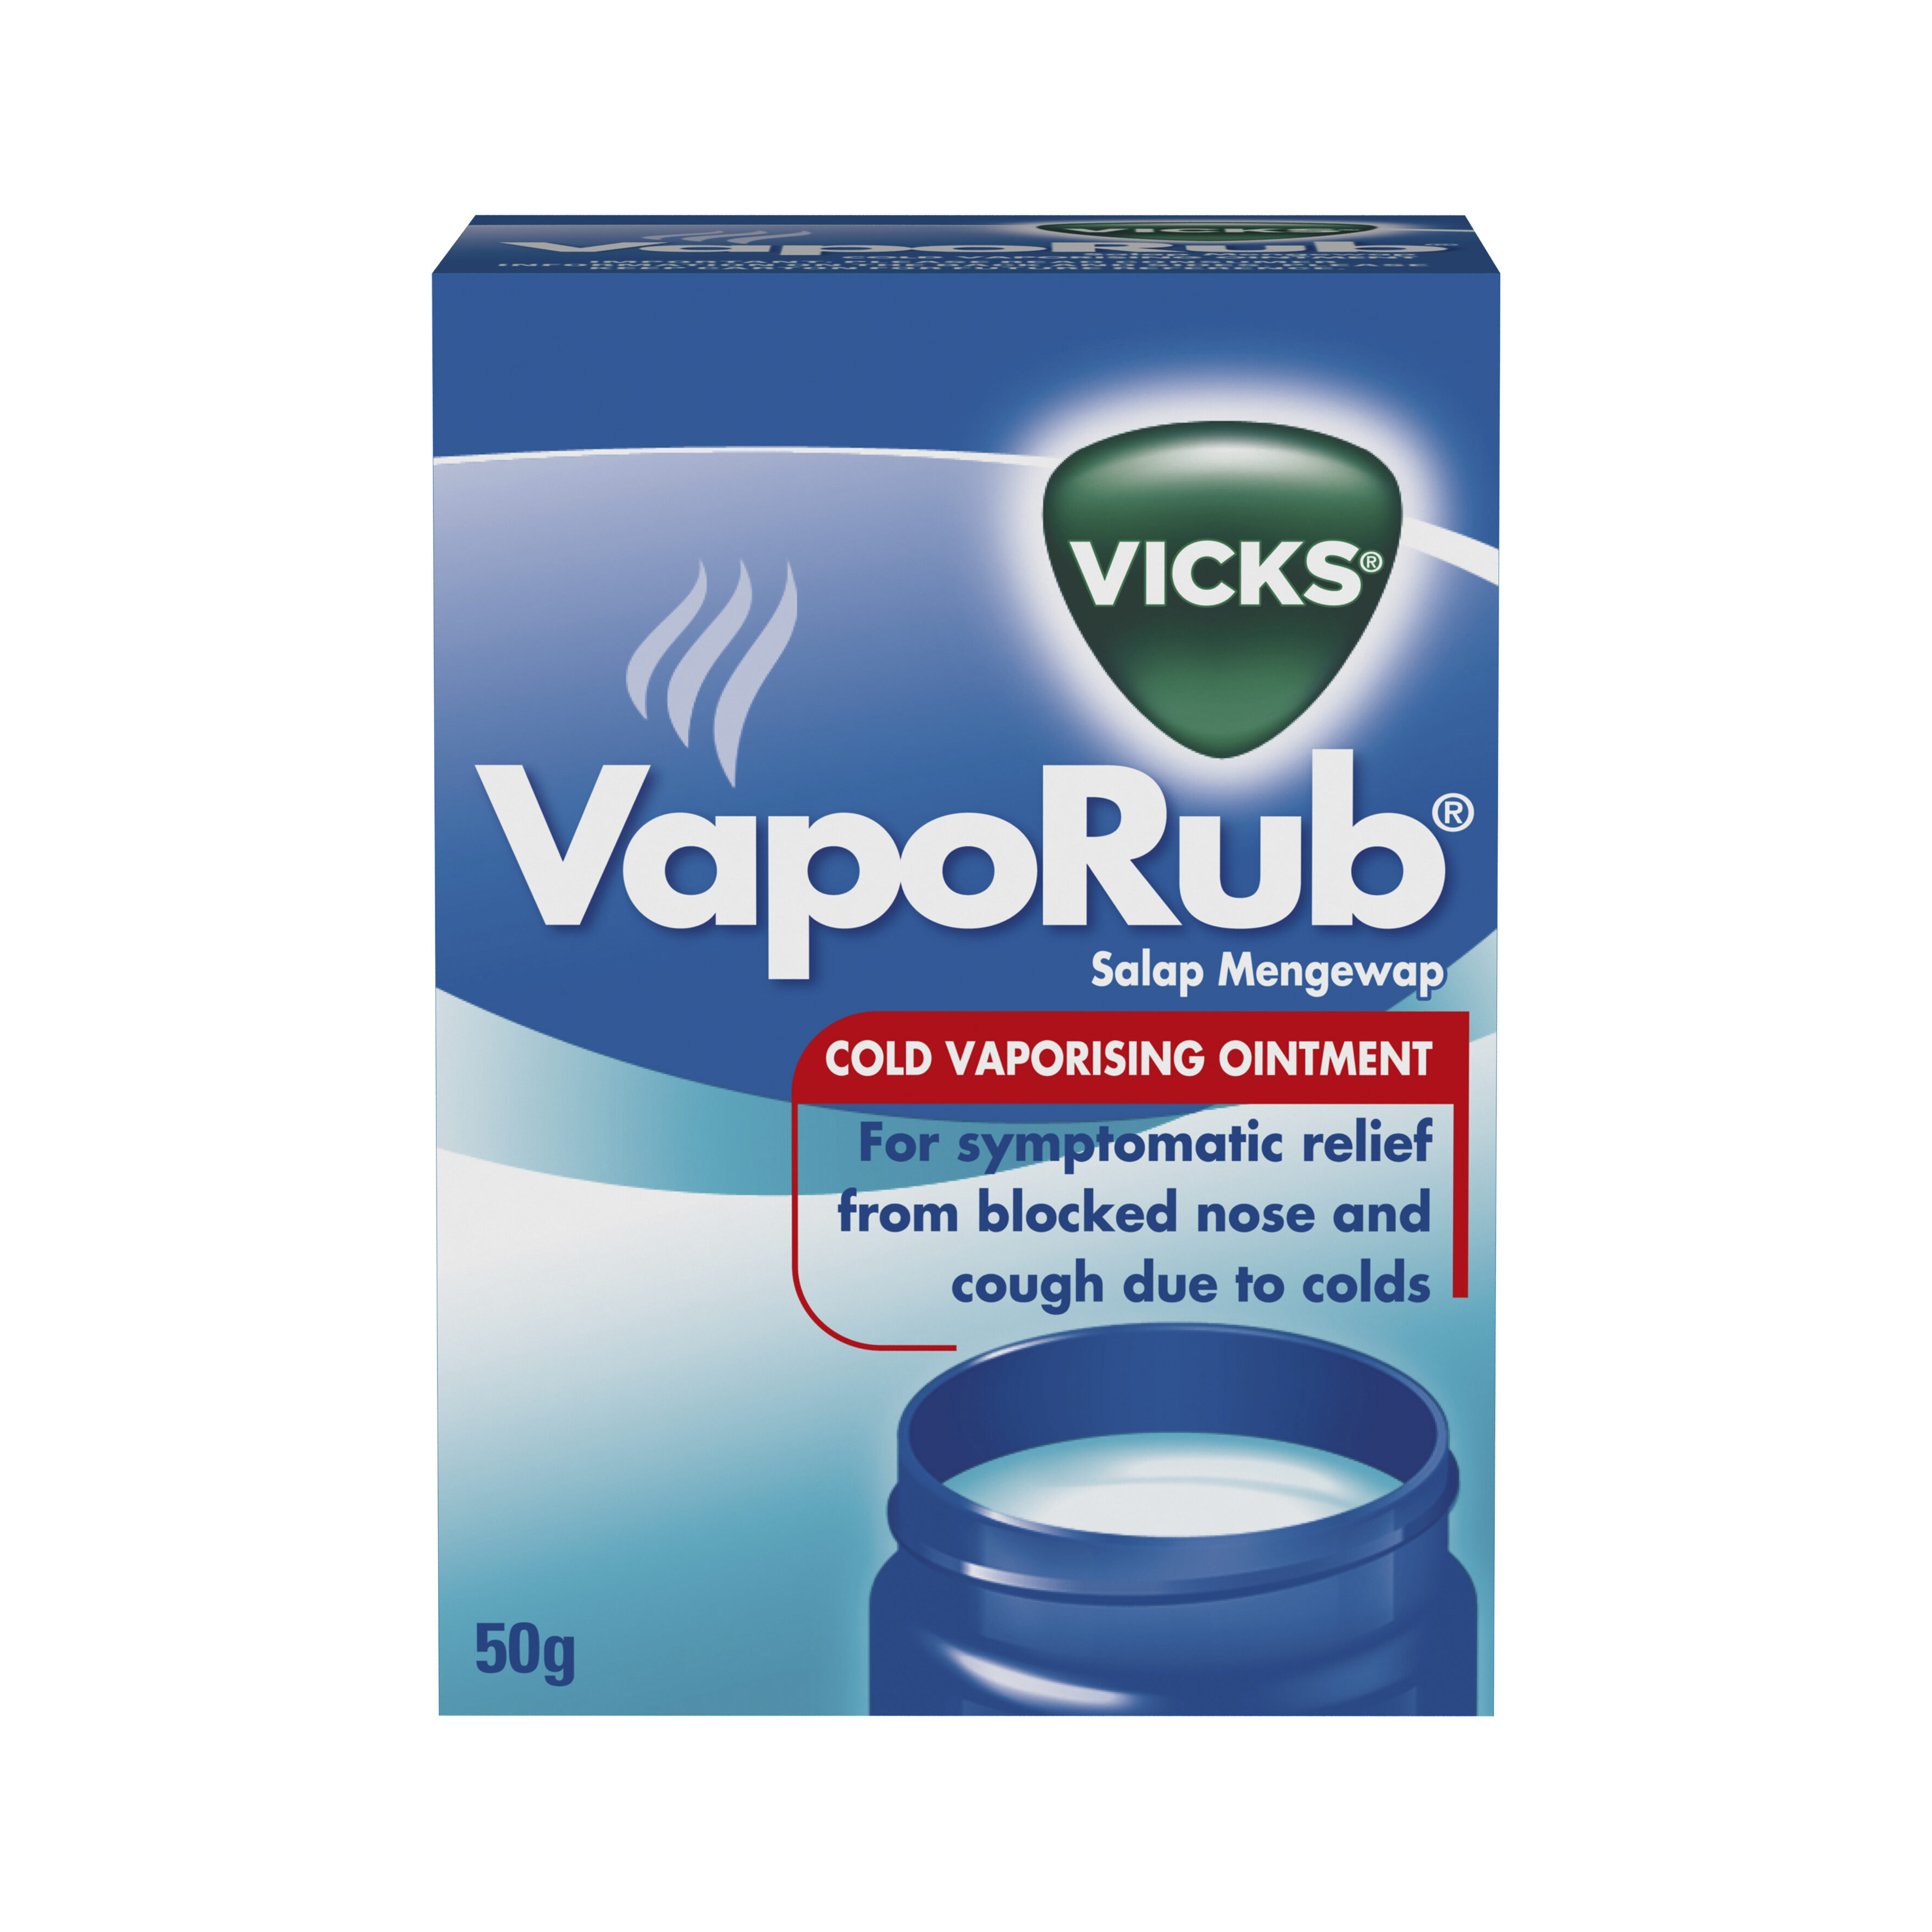 Vicks VapoRub Cold Vaporising Ointment 50g